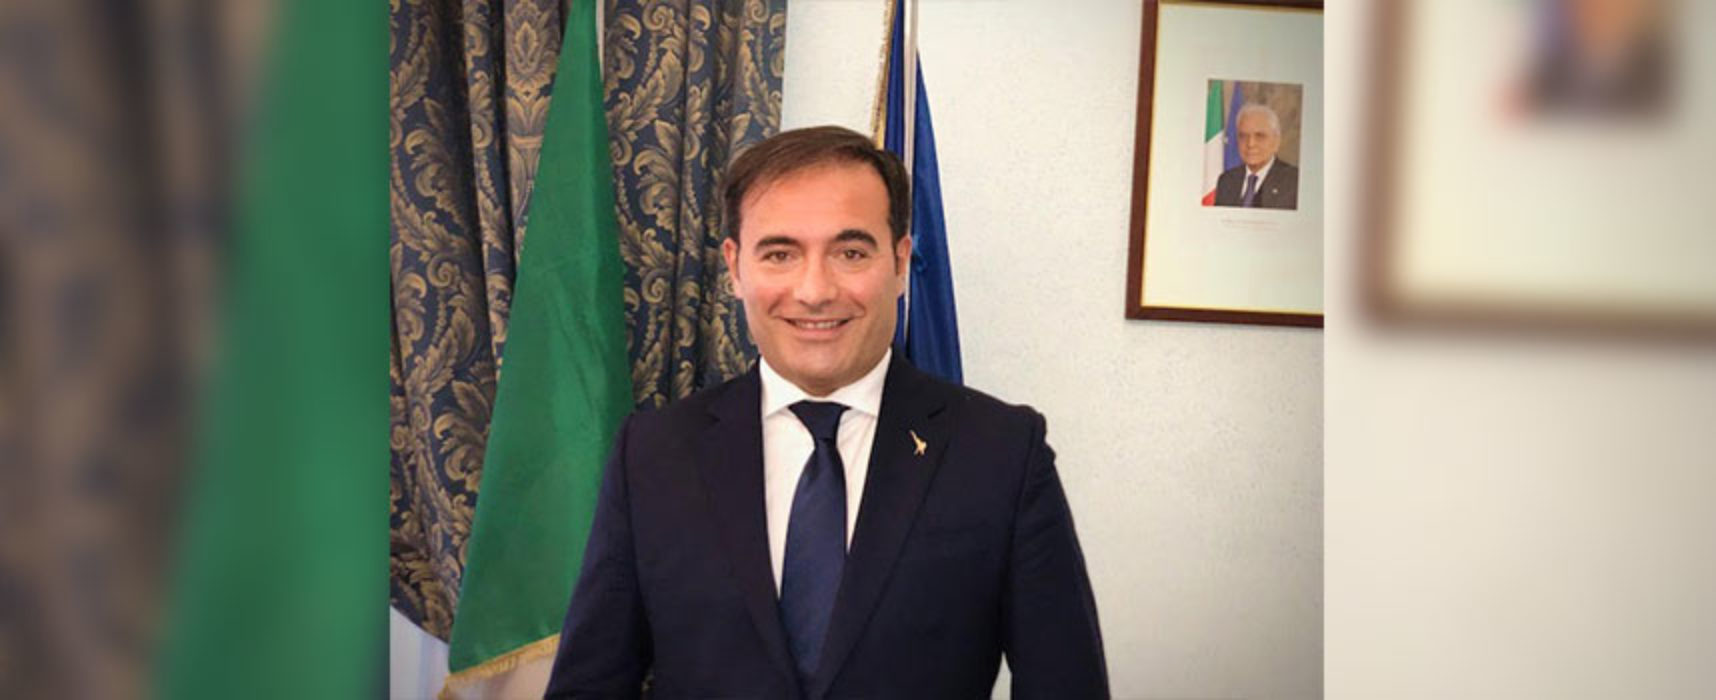 Sottosegretario Sasso in visita a Bisceglie: “Anno scolastico particolare, importante andare sui territori”